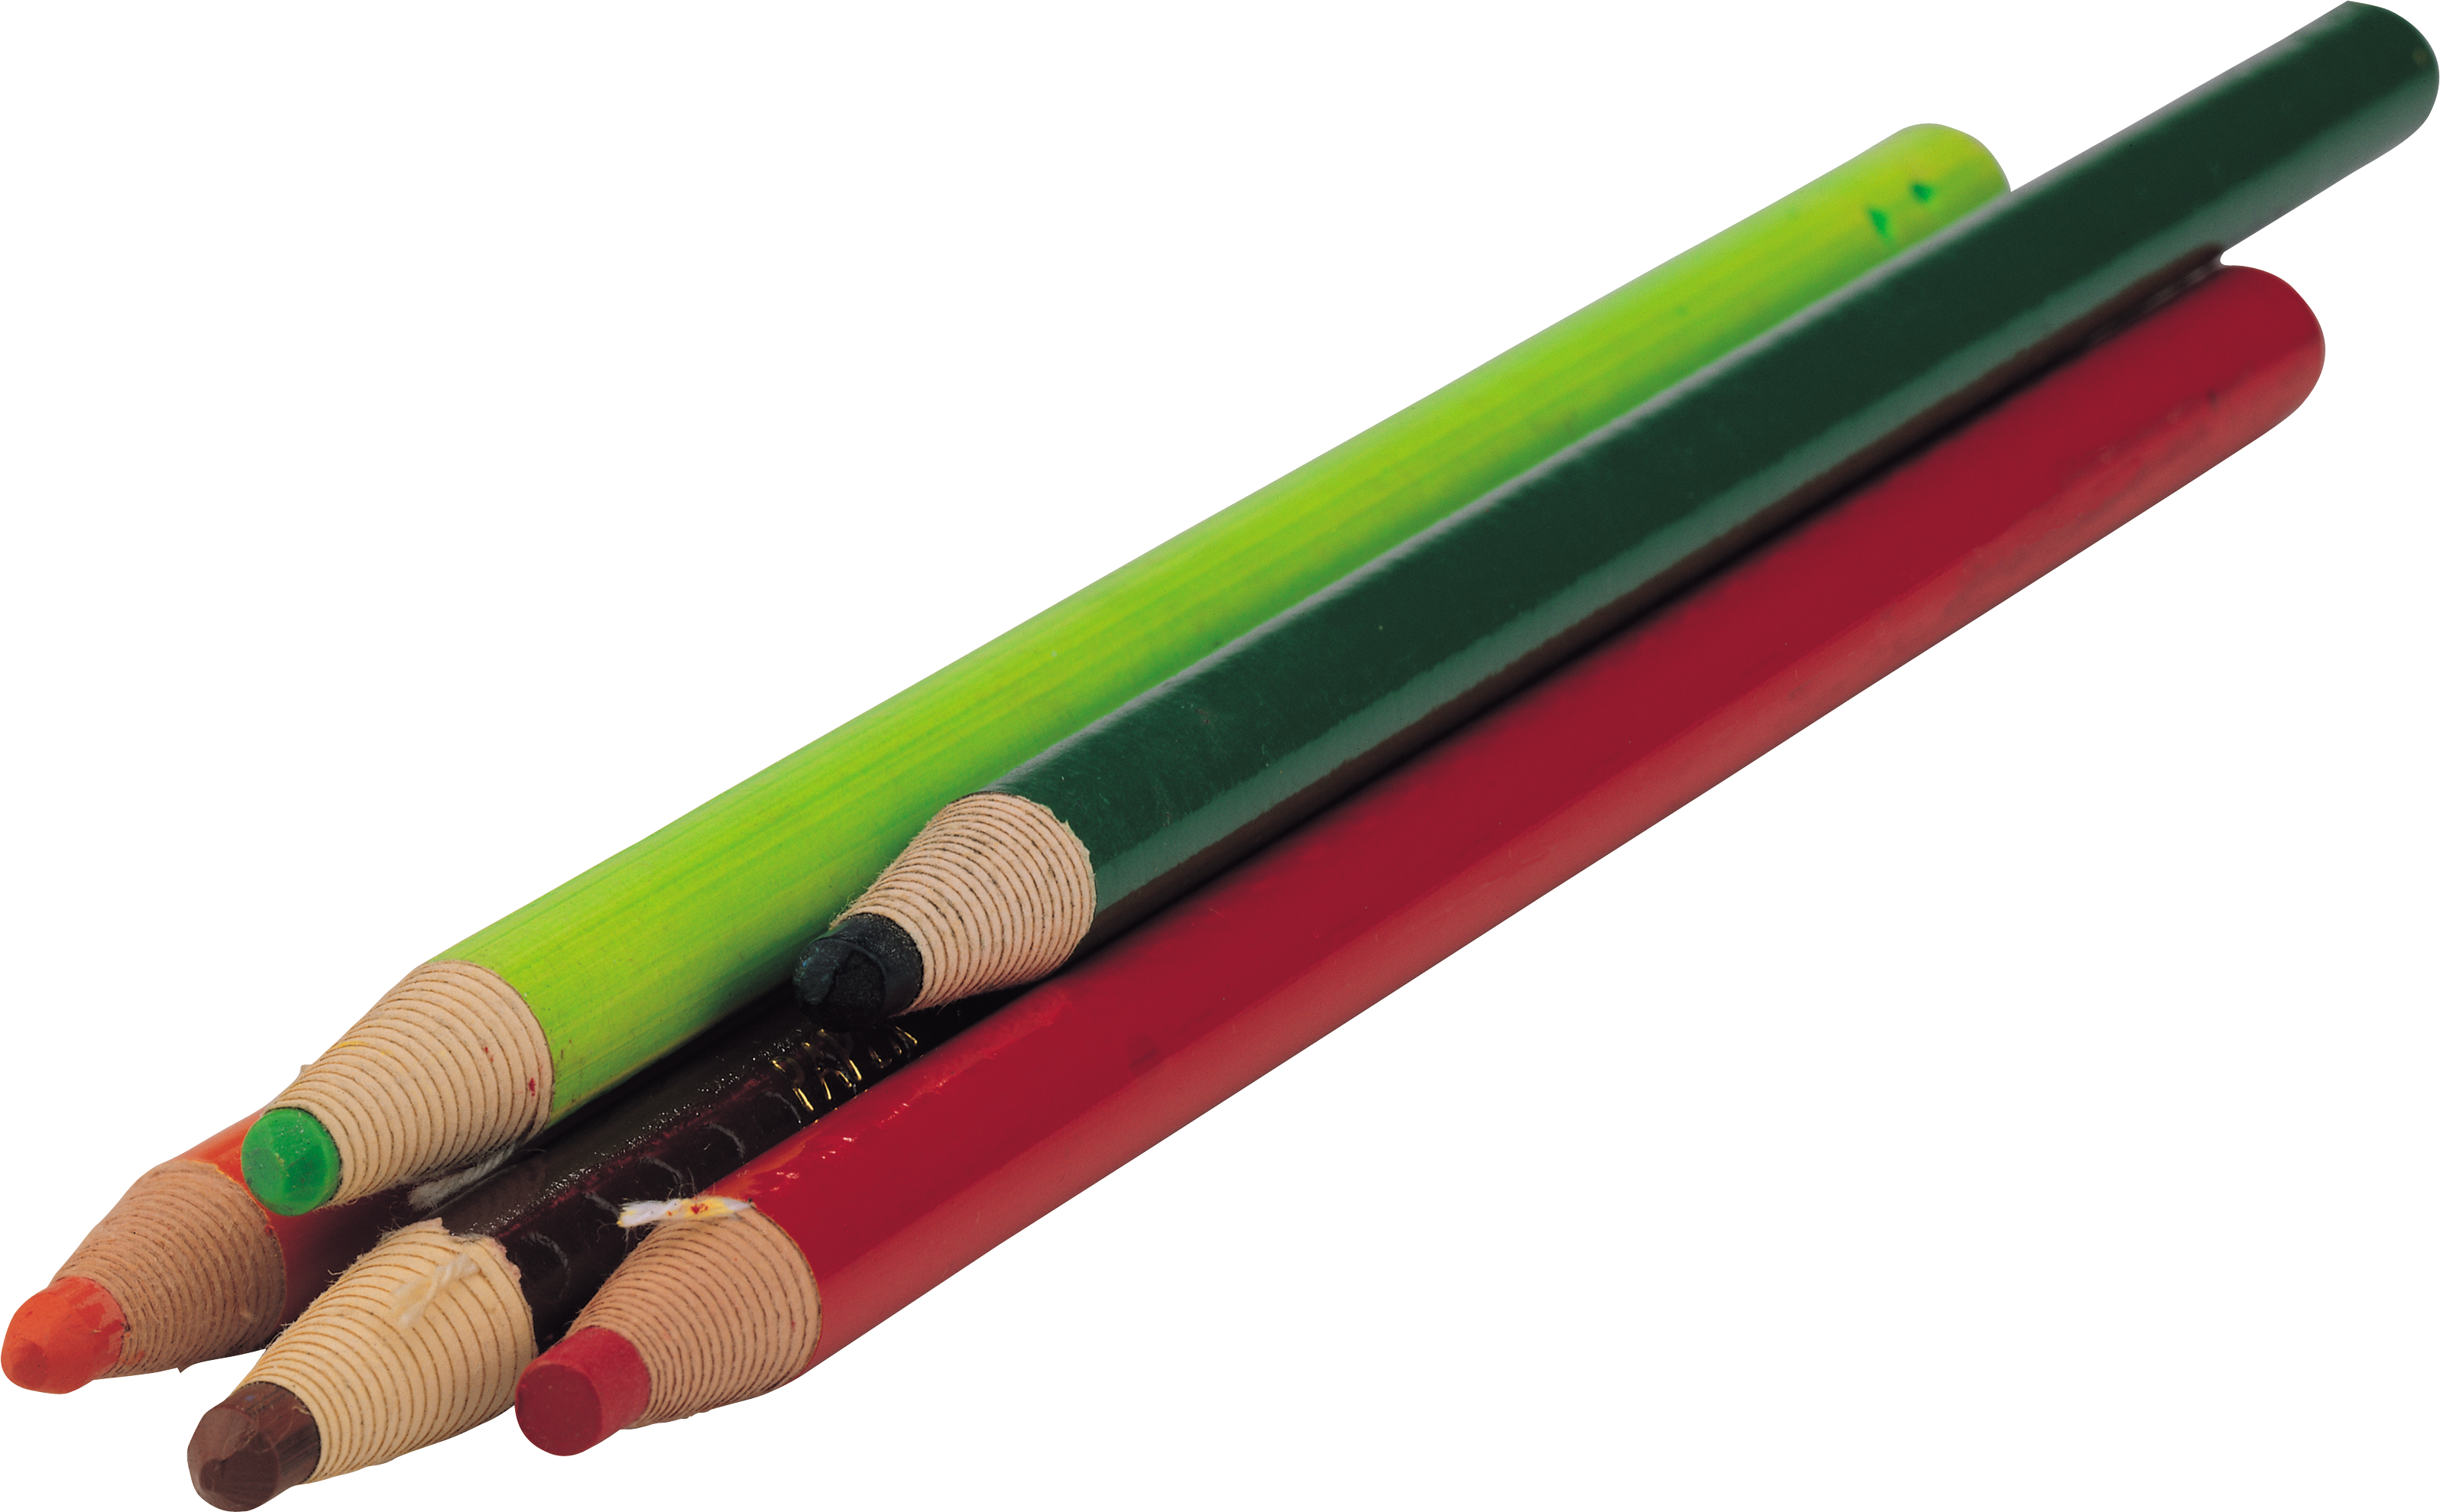 Color Pencil's PNG Image